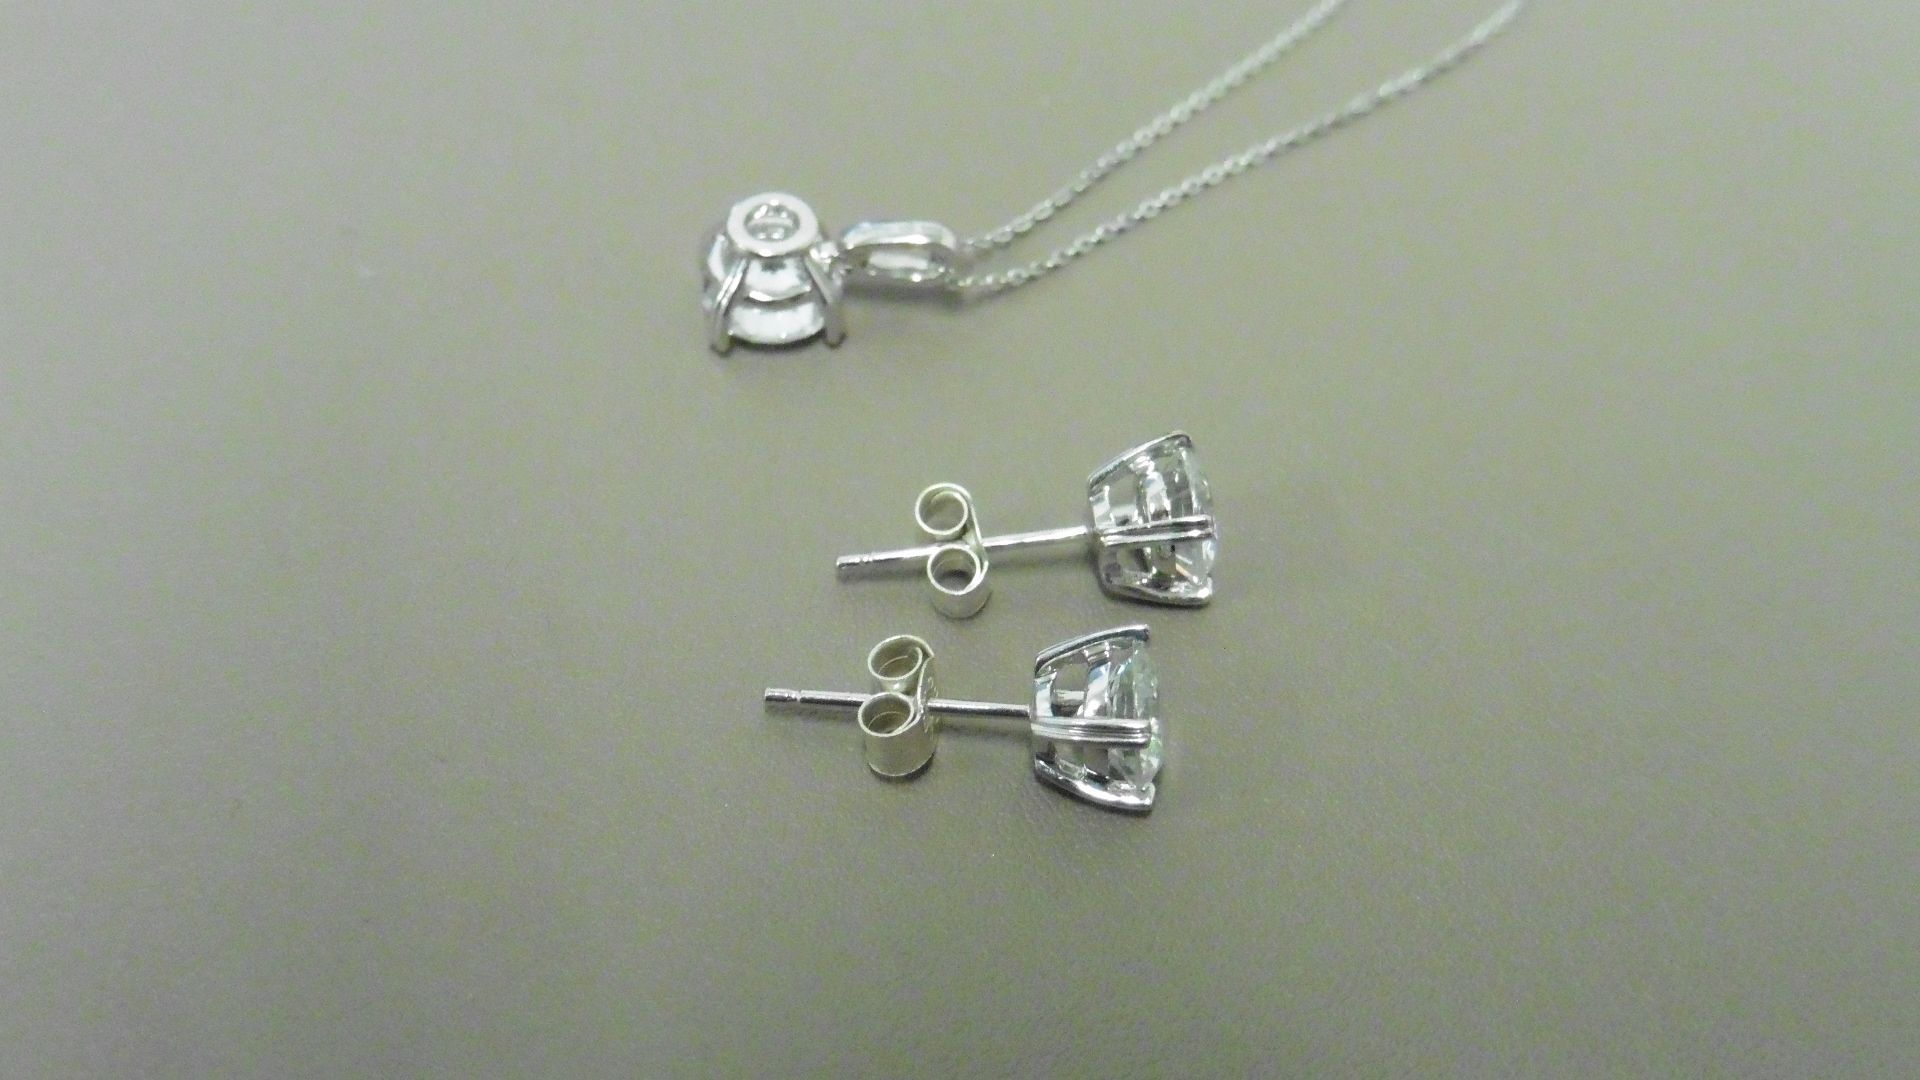 0.45ct / 0.80ct diamond pendant and earring set in platinum. Pendant - 0.40ct brilliant cut diamond, - Image 2 of 2